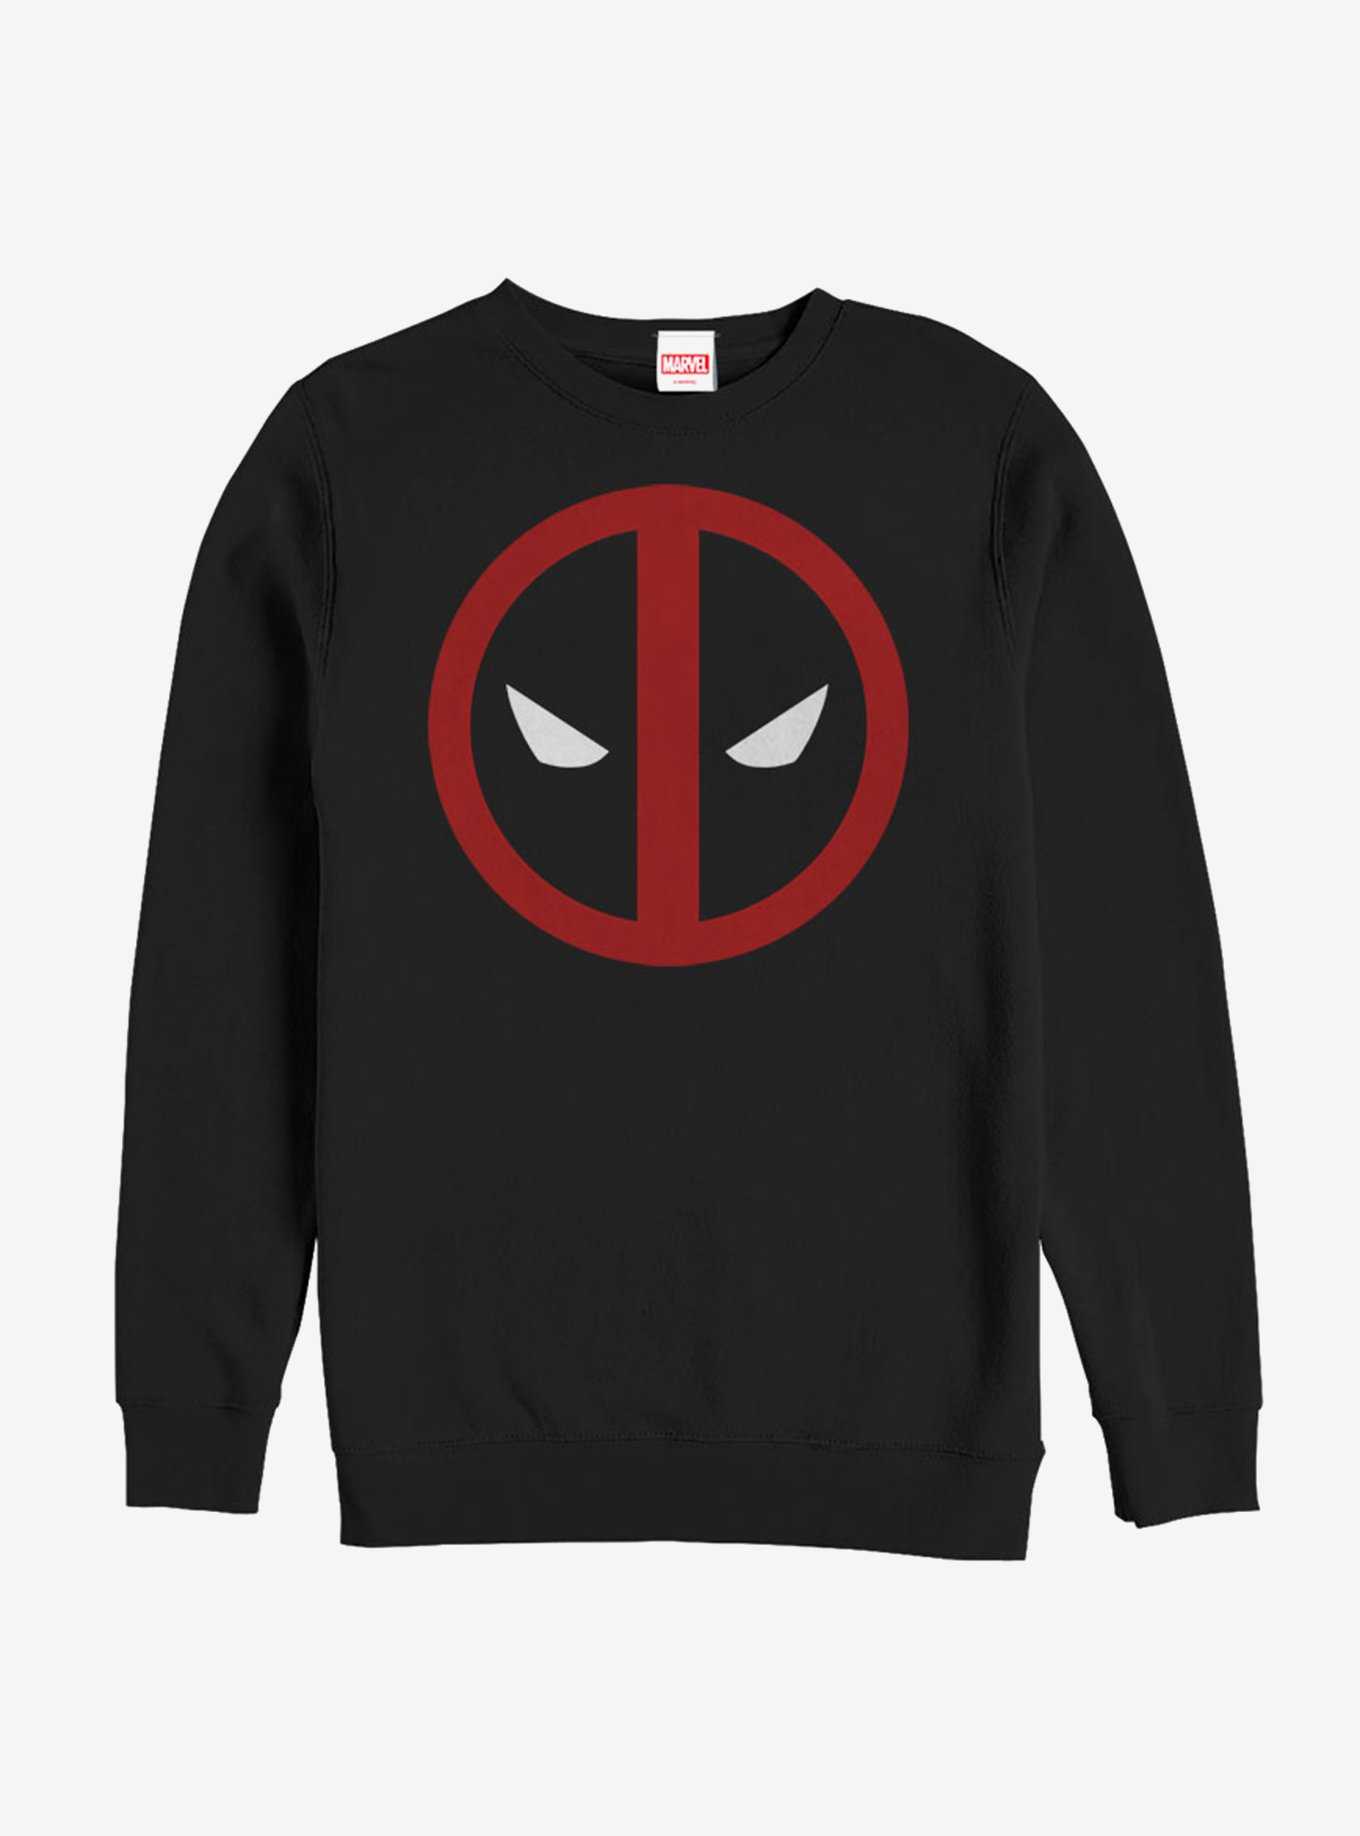 Marvel Deadpool Mask Straight Away Sweatshirt, , hi-res